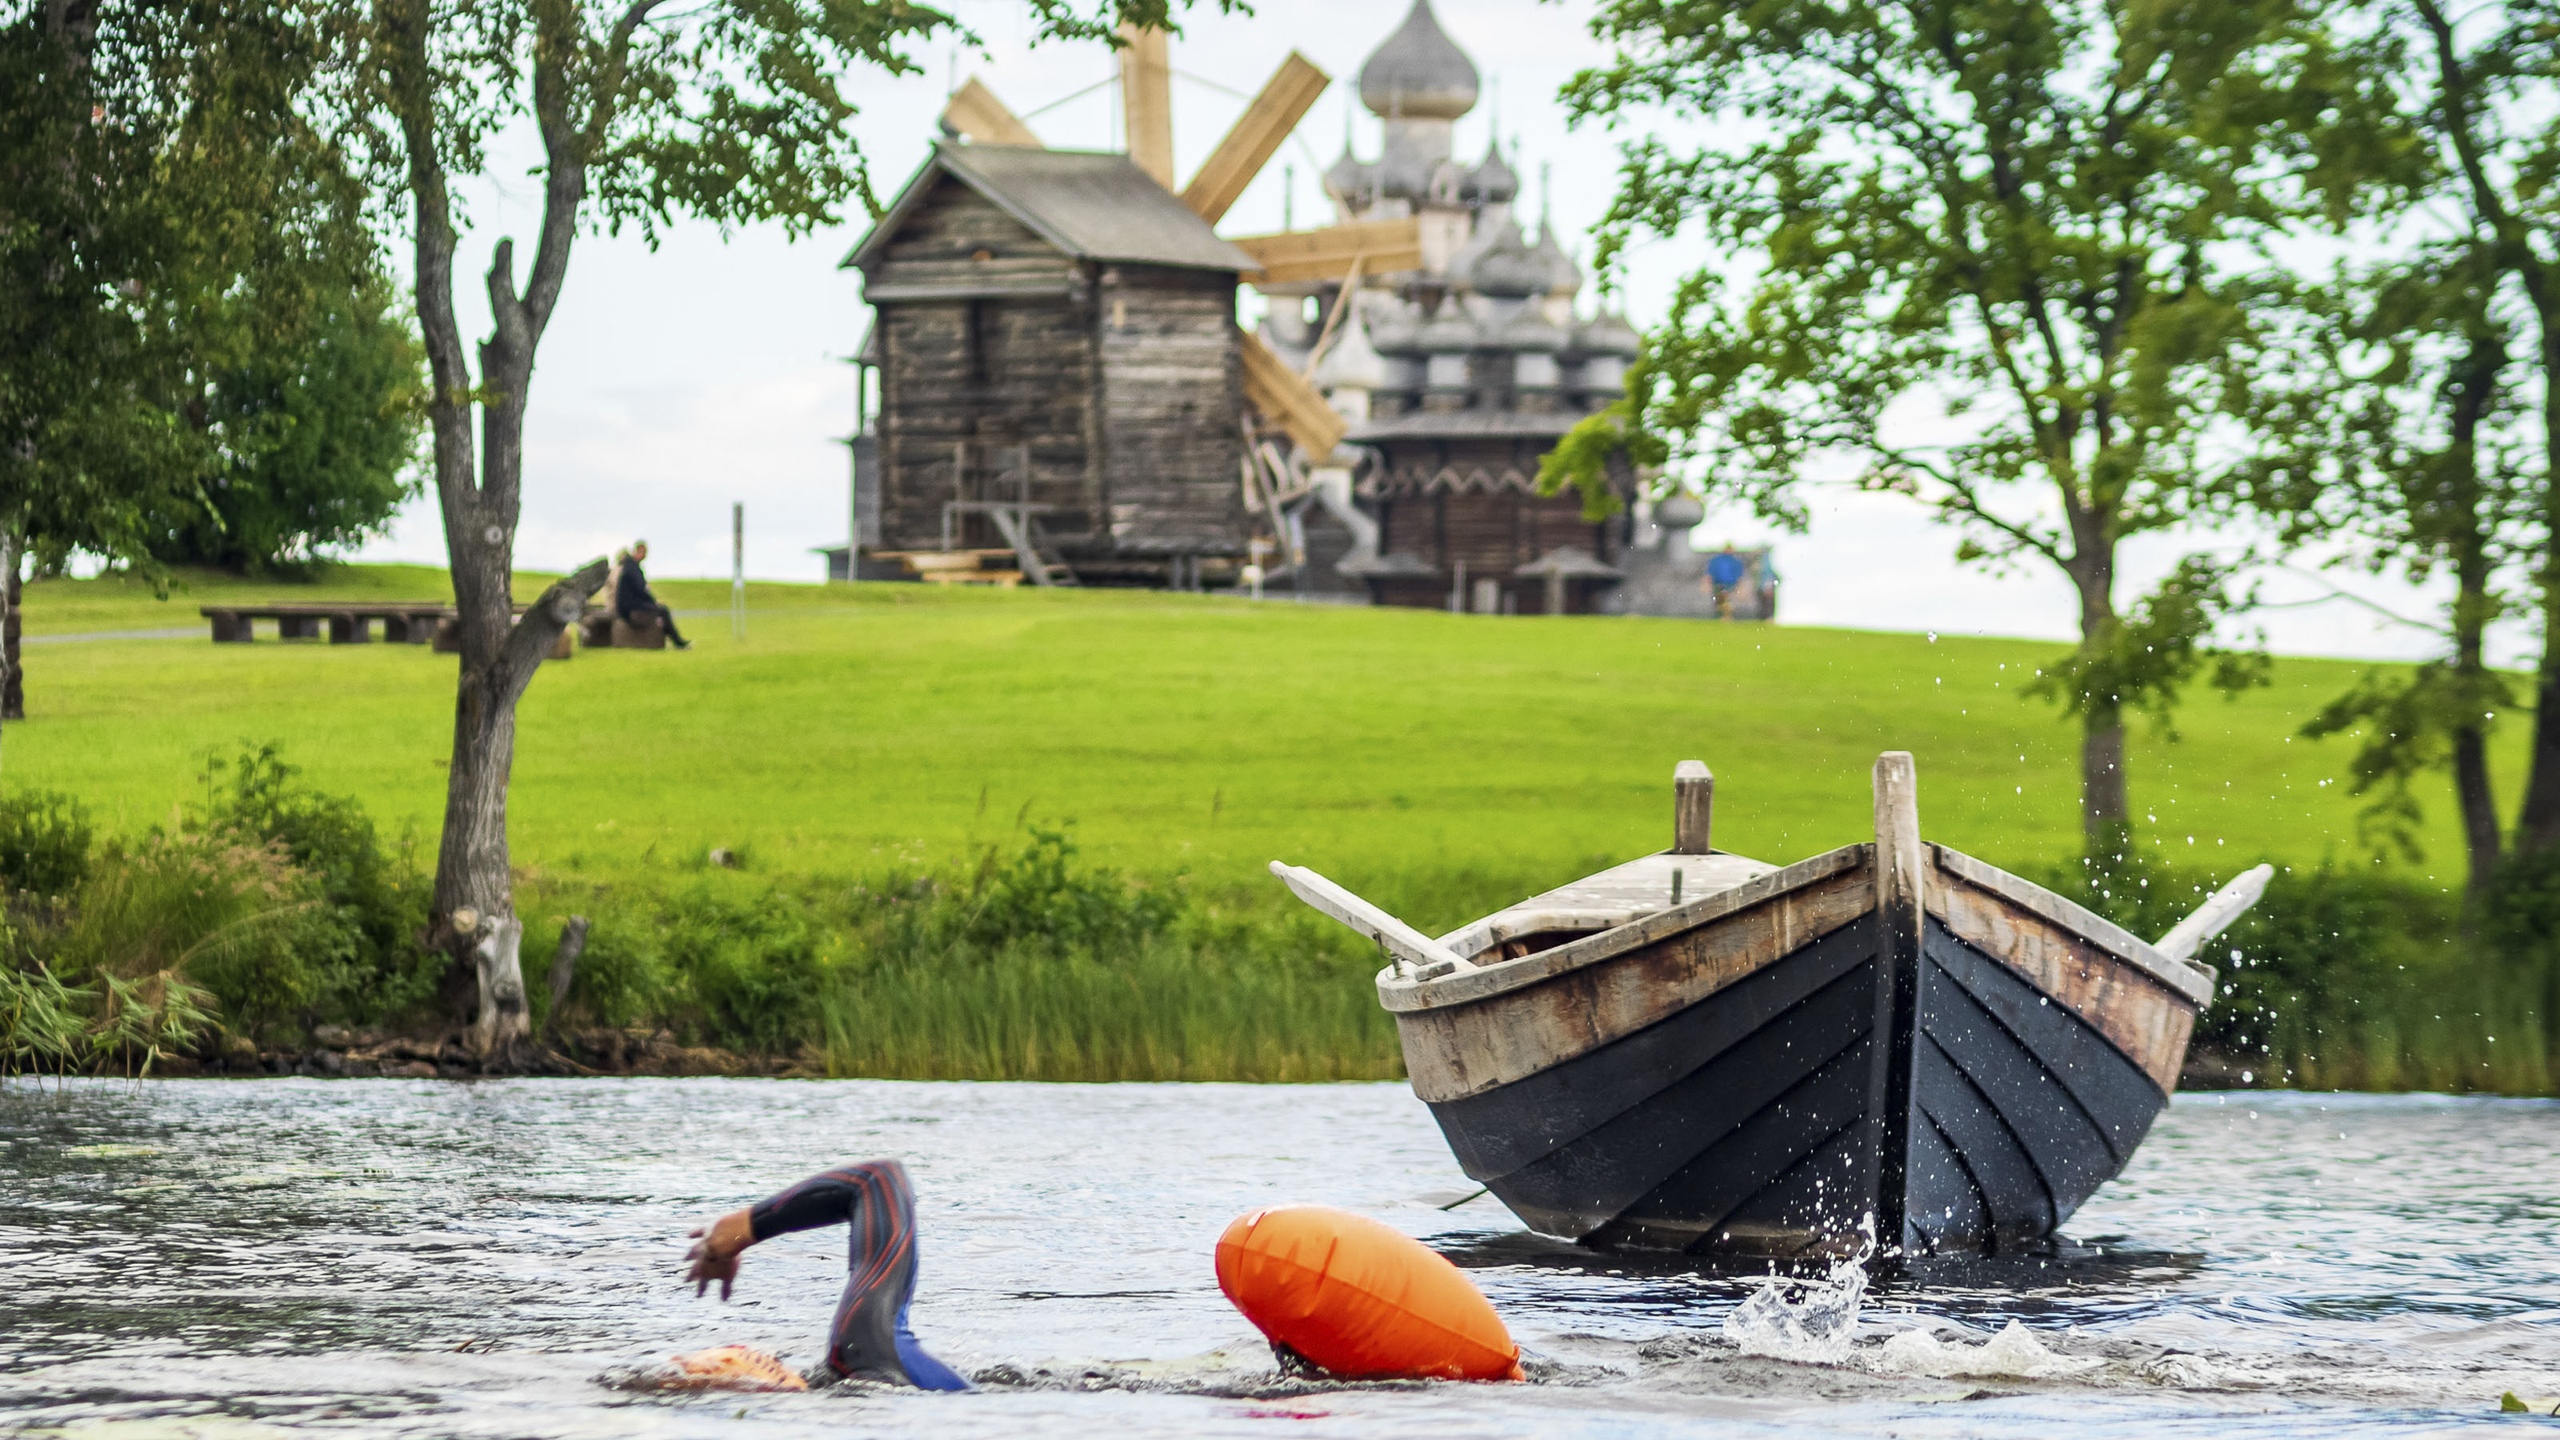 "Заплыв на открытой воде Кижи SWIM" стал третьим по значимости событием туризма в России